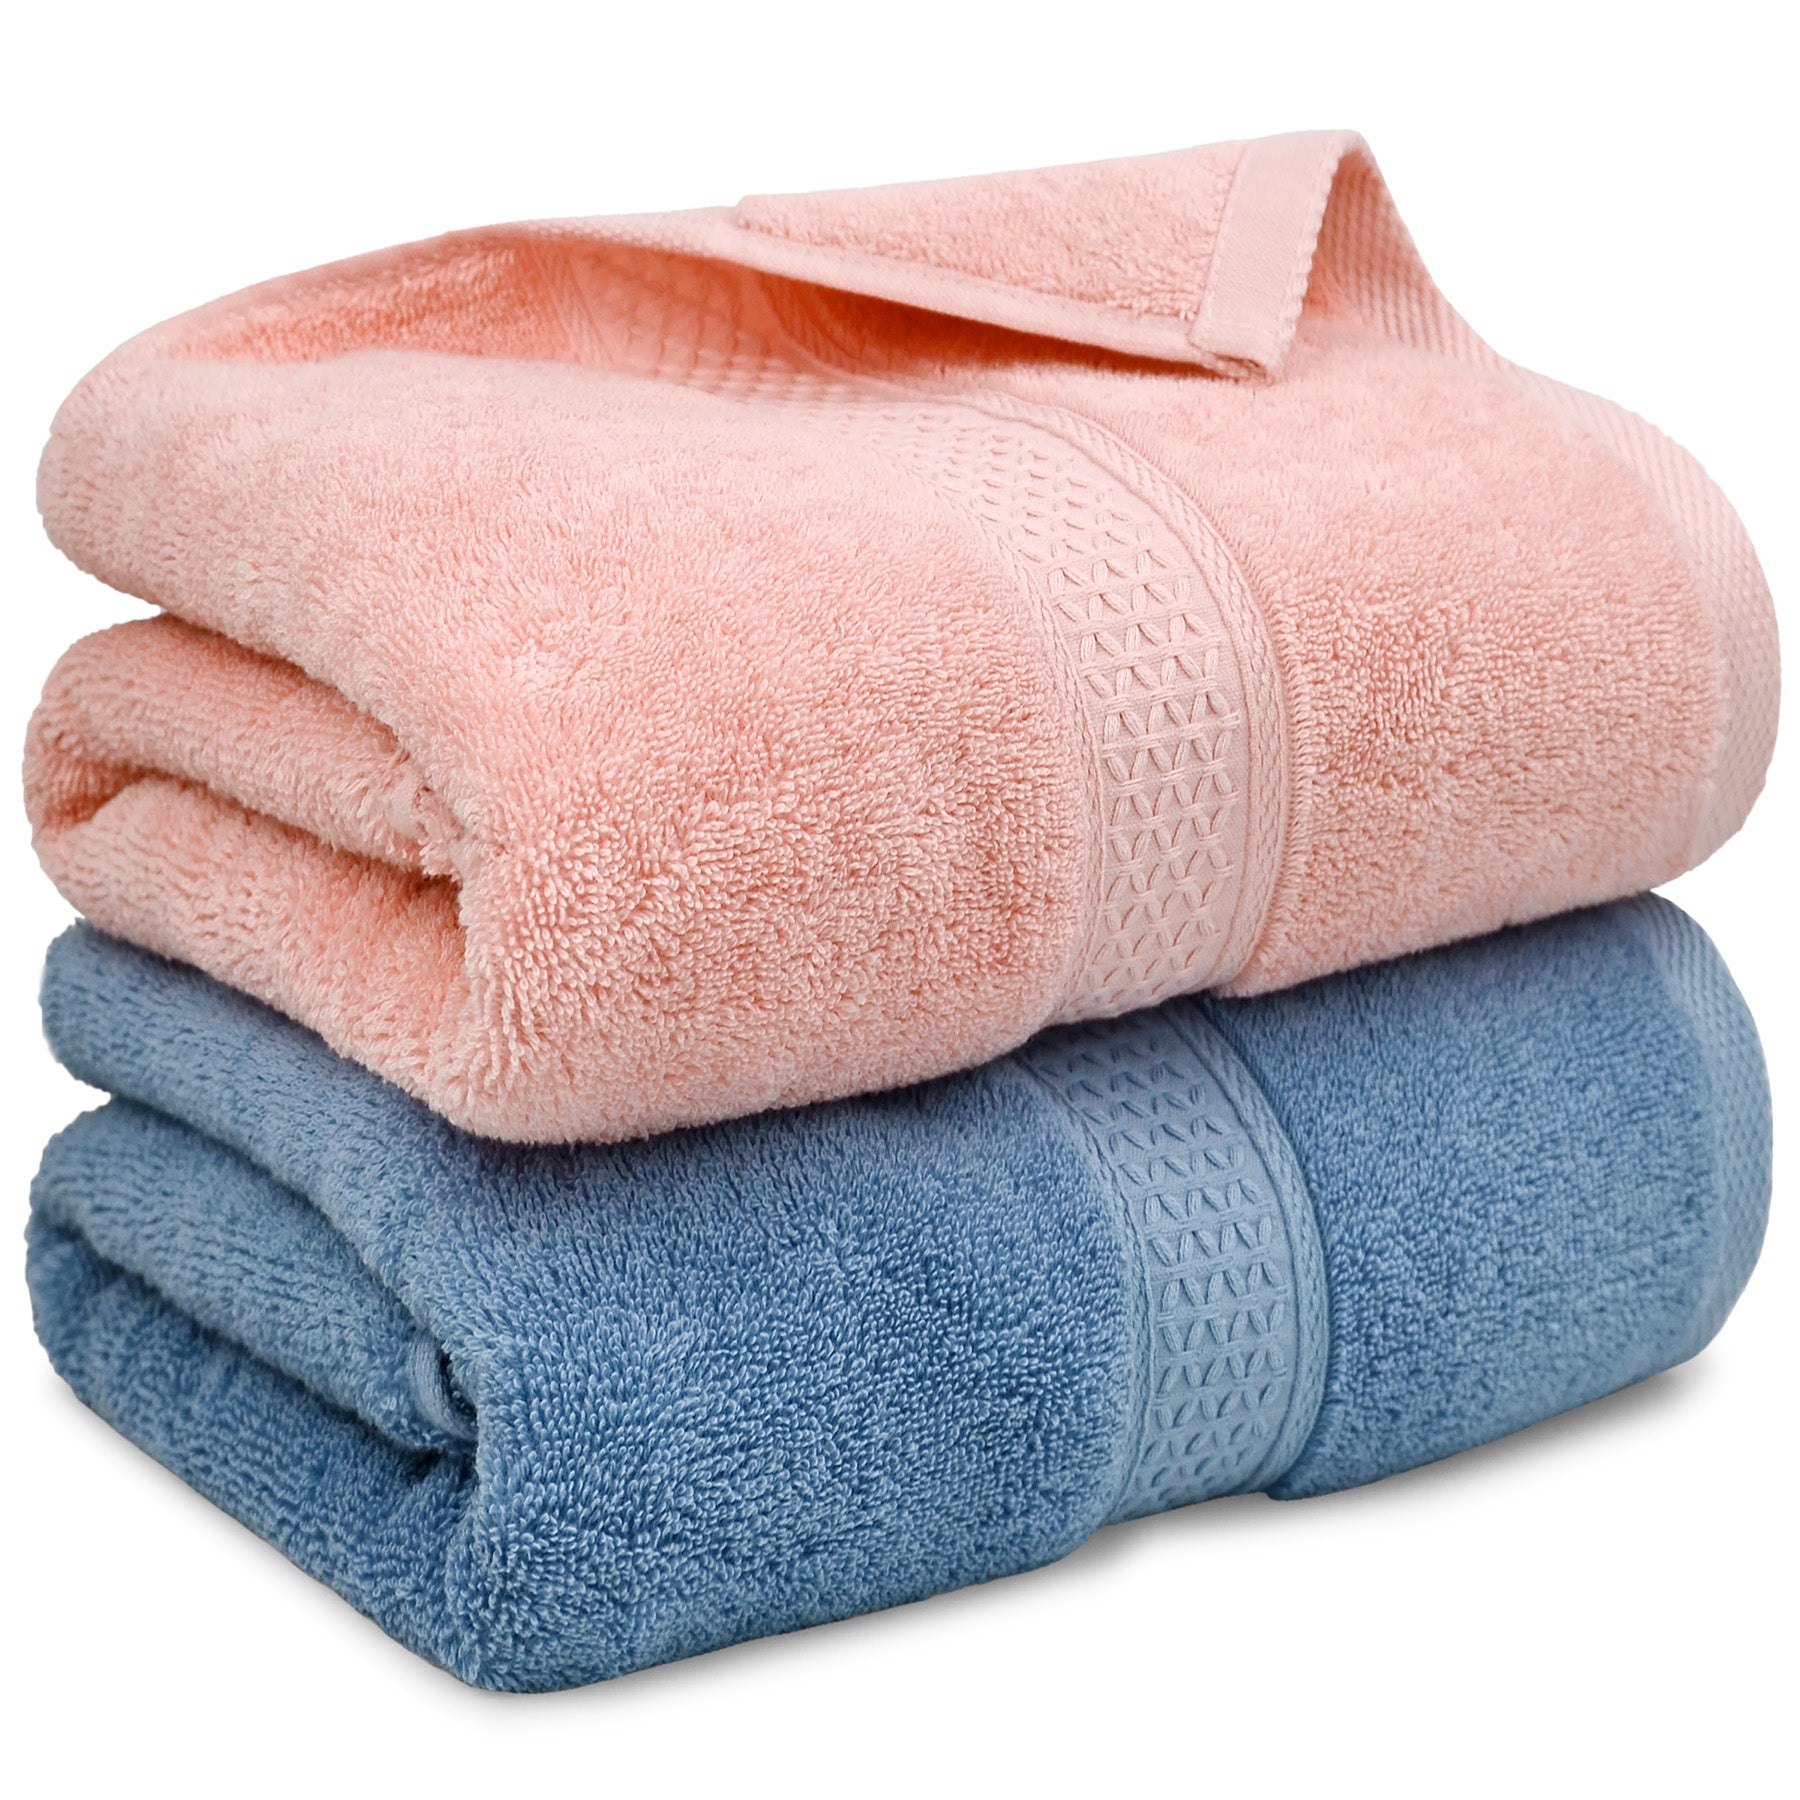 Cotton Bath Towel Set